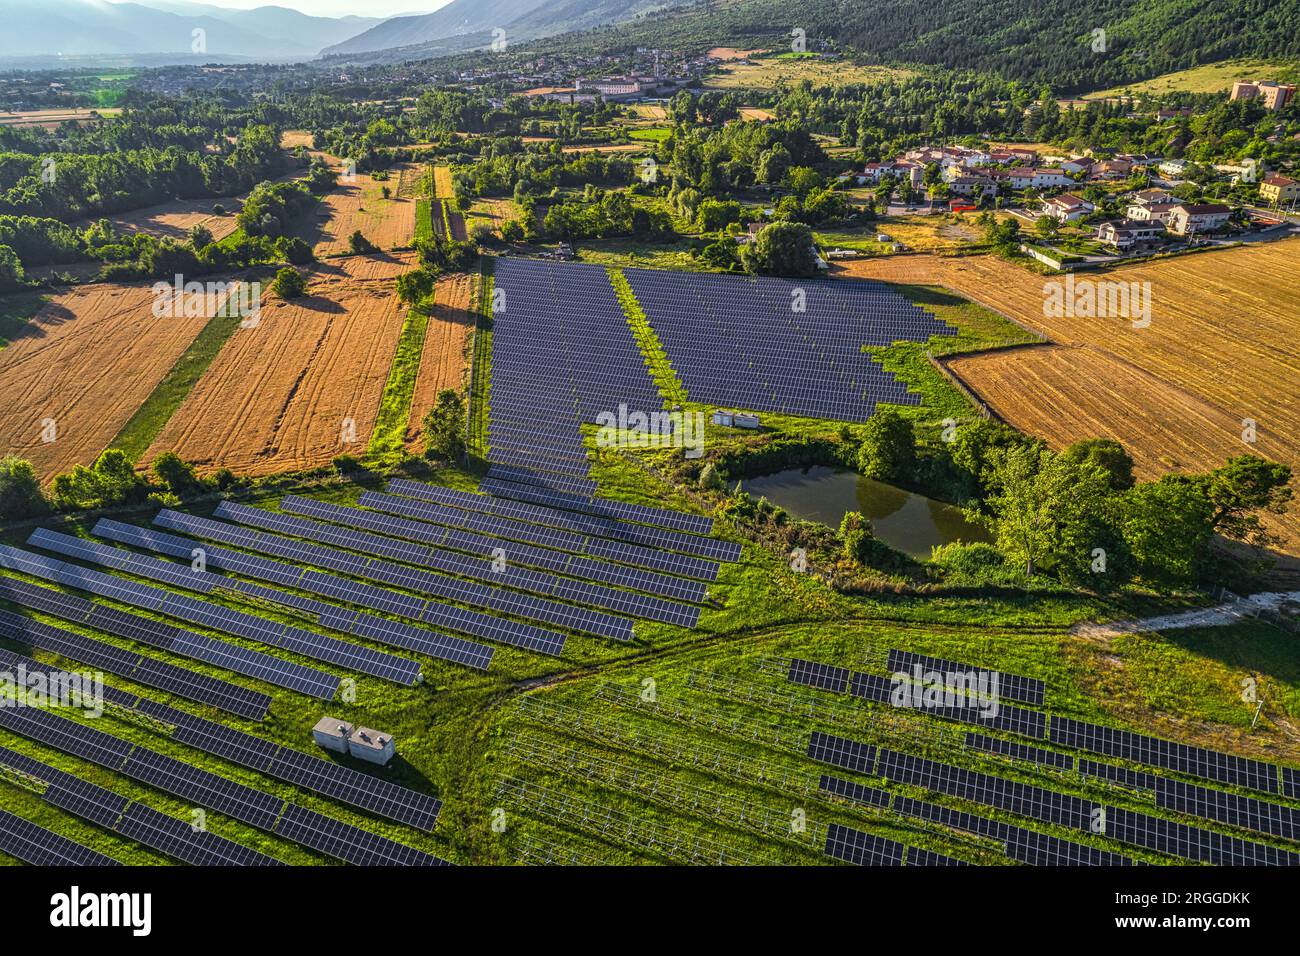 Domaine des panneaux solaires pour la production d'énergie renouvelable et non polluante. Abruzzes, Italie, Europe Banque D'Images